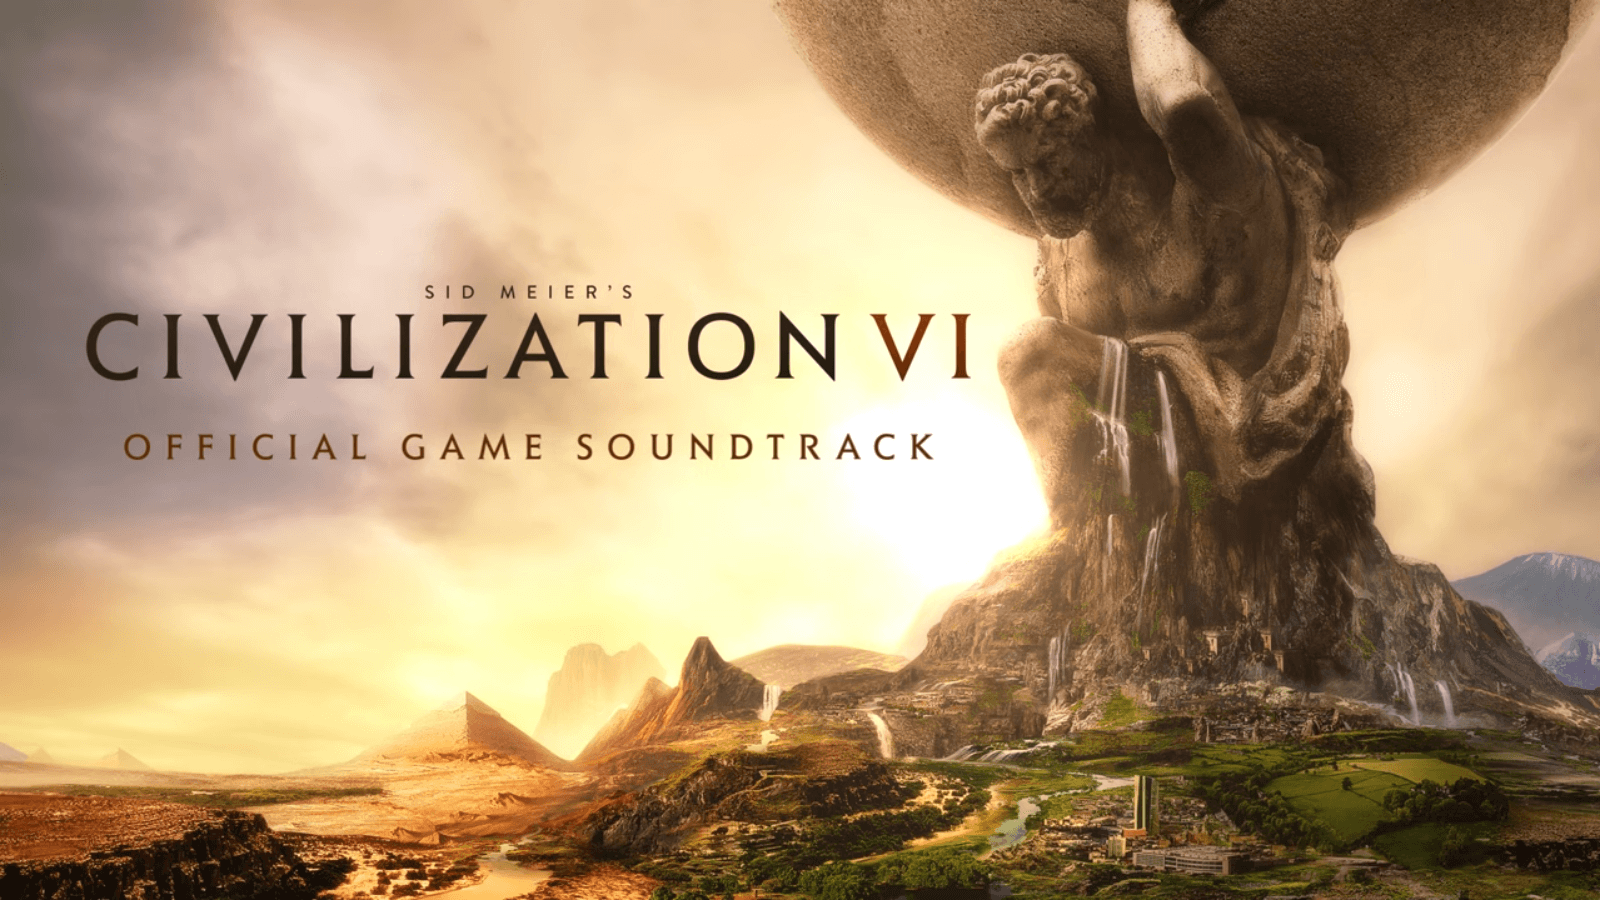 Civilization VI HD Wallpaper and Background Image